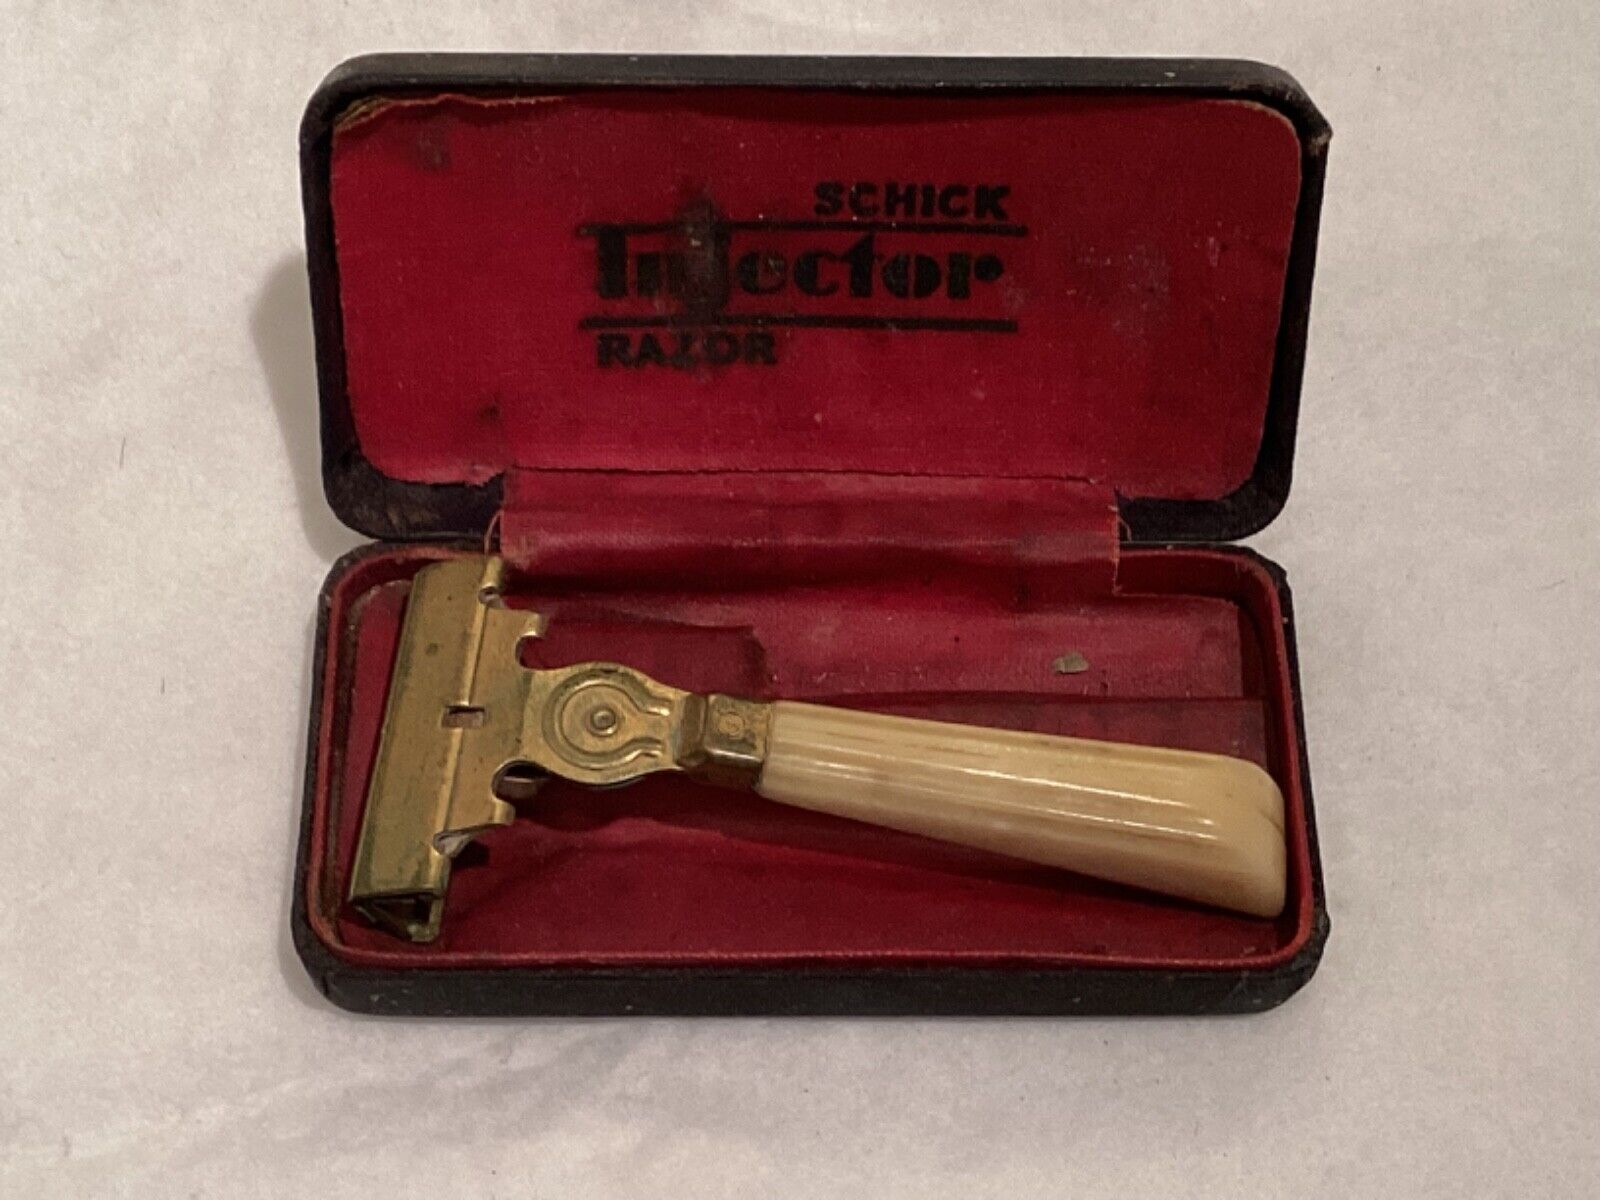 Vintage Antique Schick Injector Razor With Case Bakelite Handle